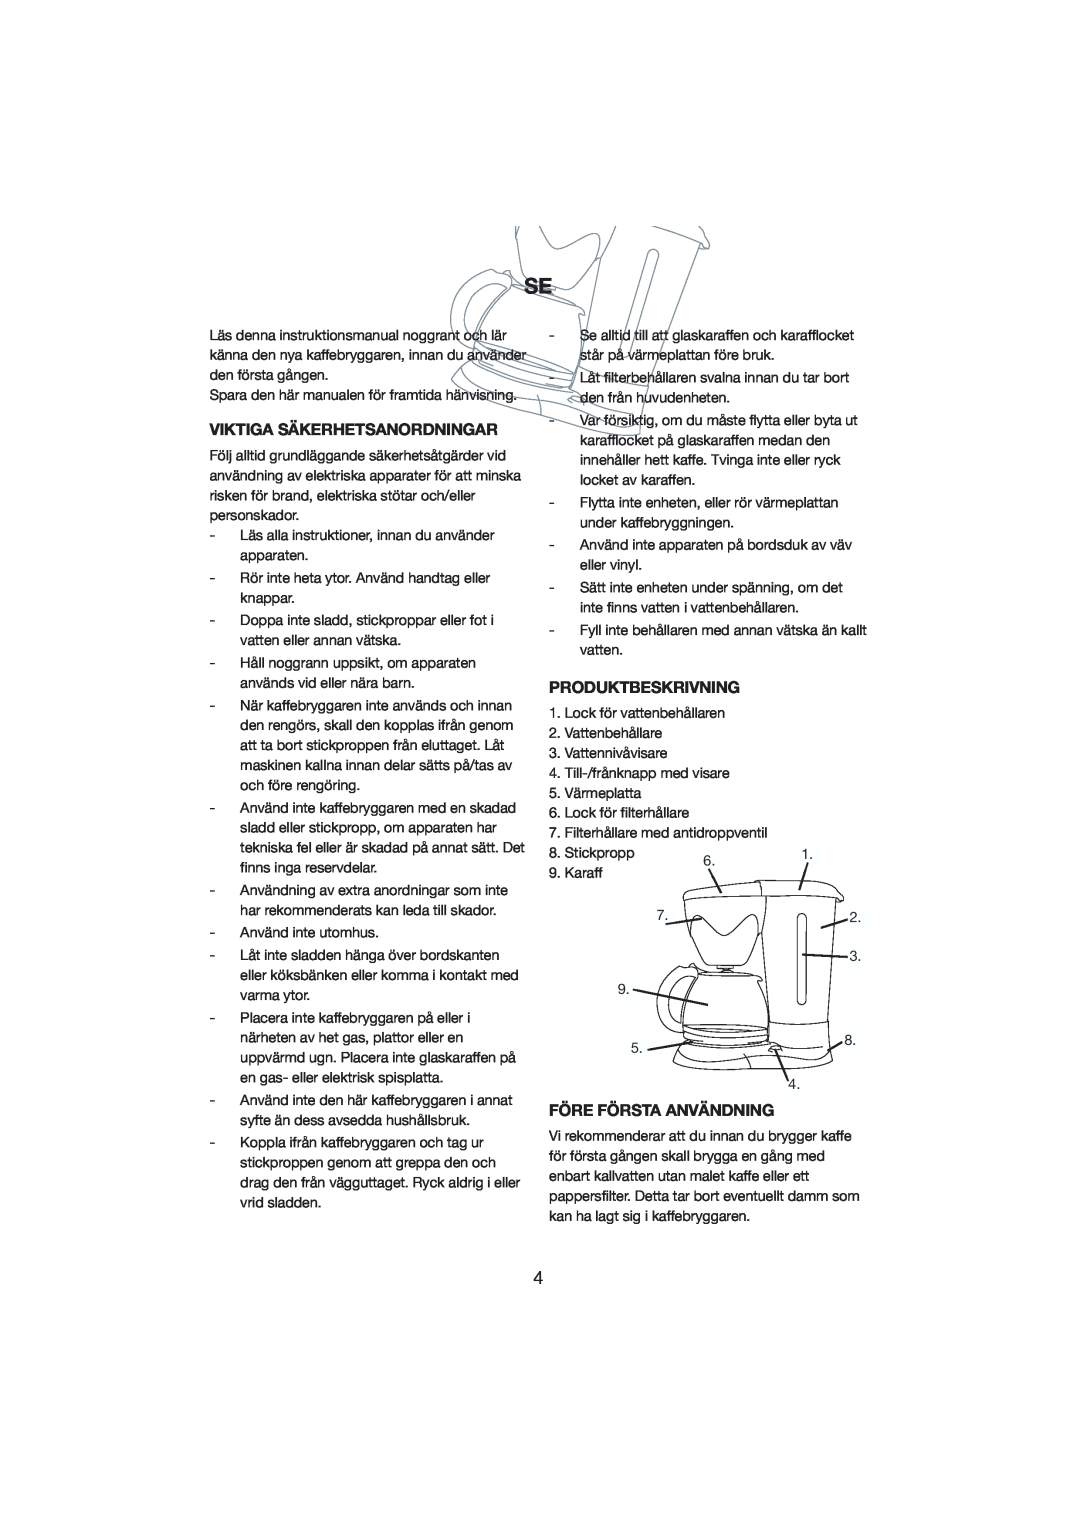 Melissa 245-009 manual Viktiga Säkerhetsanordningar, Produktbeskrivning, Före Första Användning 